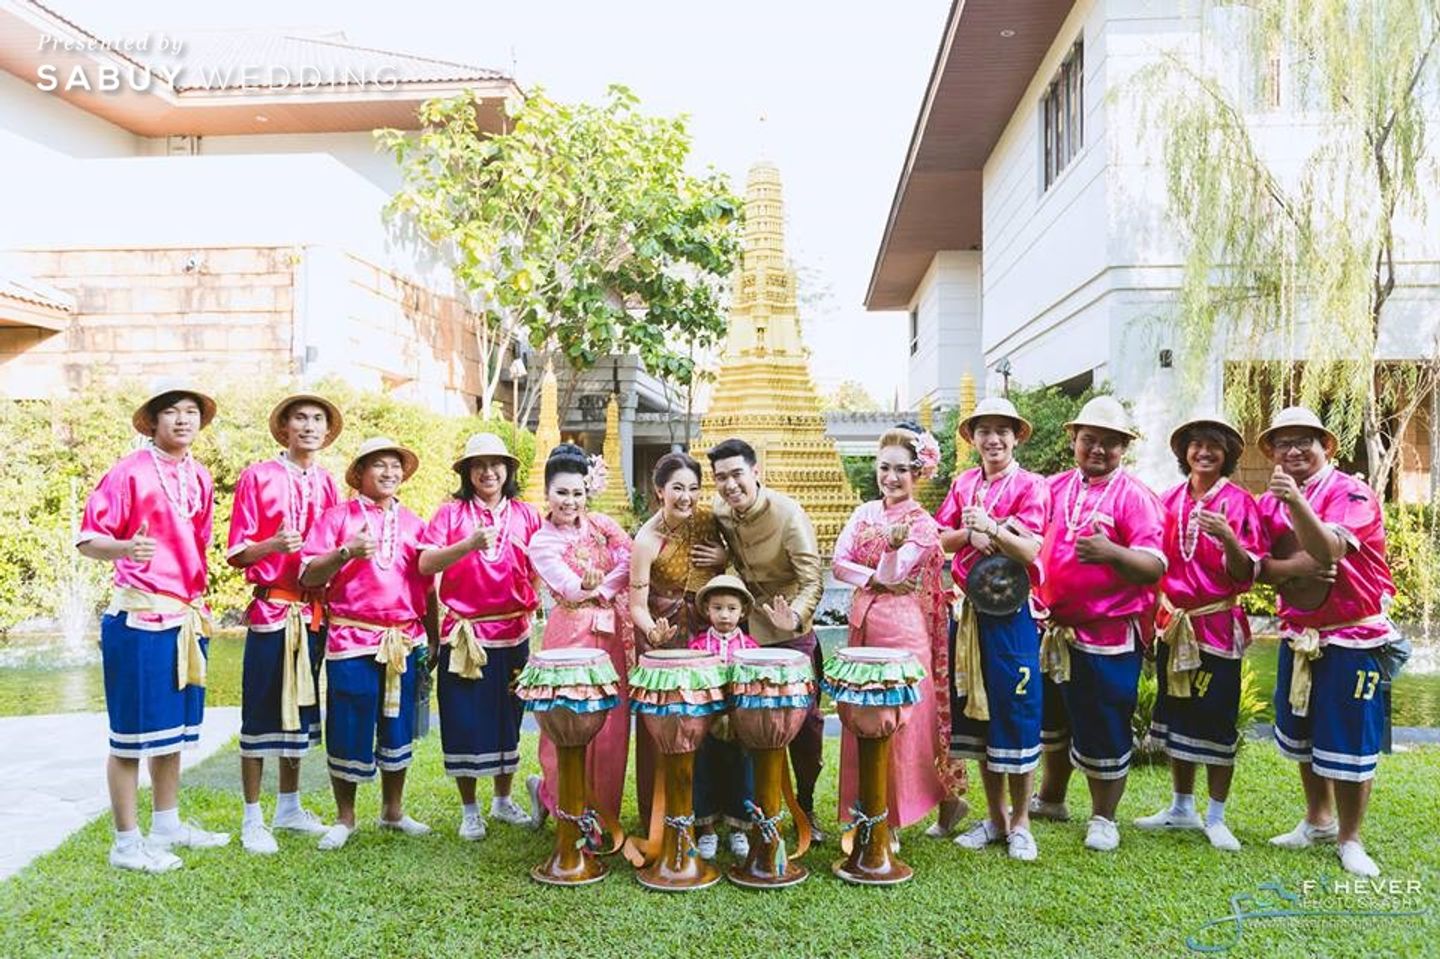 พิธีแต่งงานแบบไทย,ส่งตัวบ่าวสาว รีวิวงานแต่งแบบไทย ใช้พิธีการครบสูตร @Phothalai leisure park